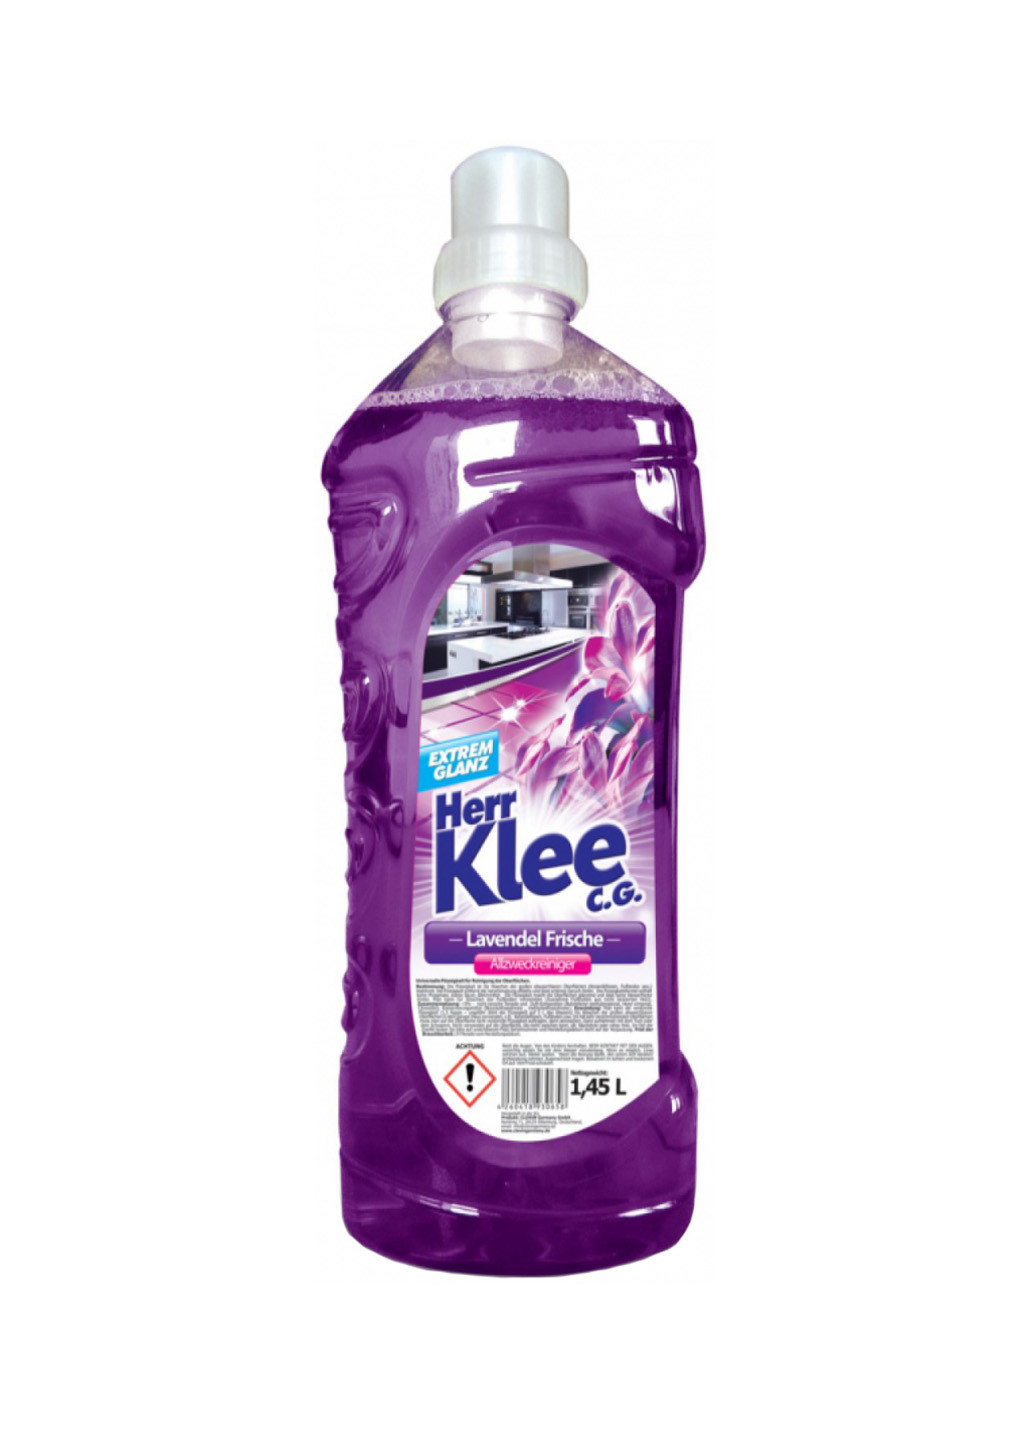 Жидкость универсальная для мытья полов lavendel frische (1450 мл) Klee 4260418930658 (259967242)